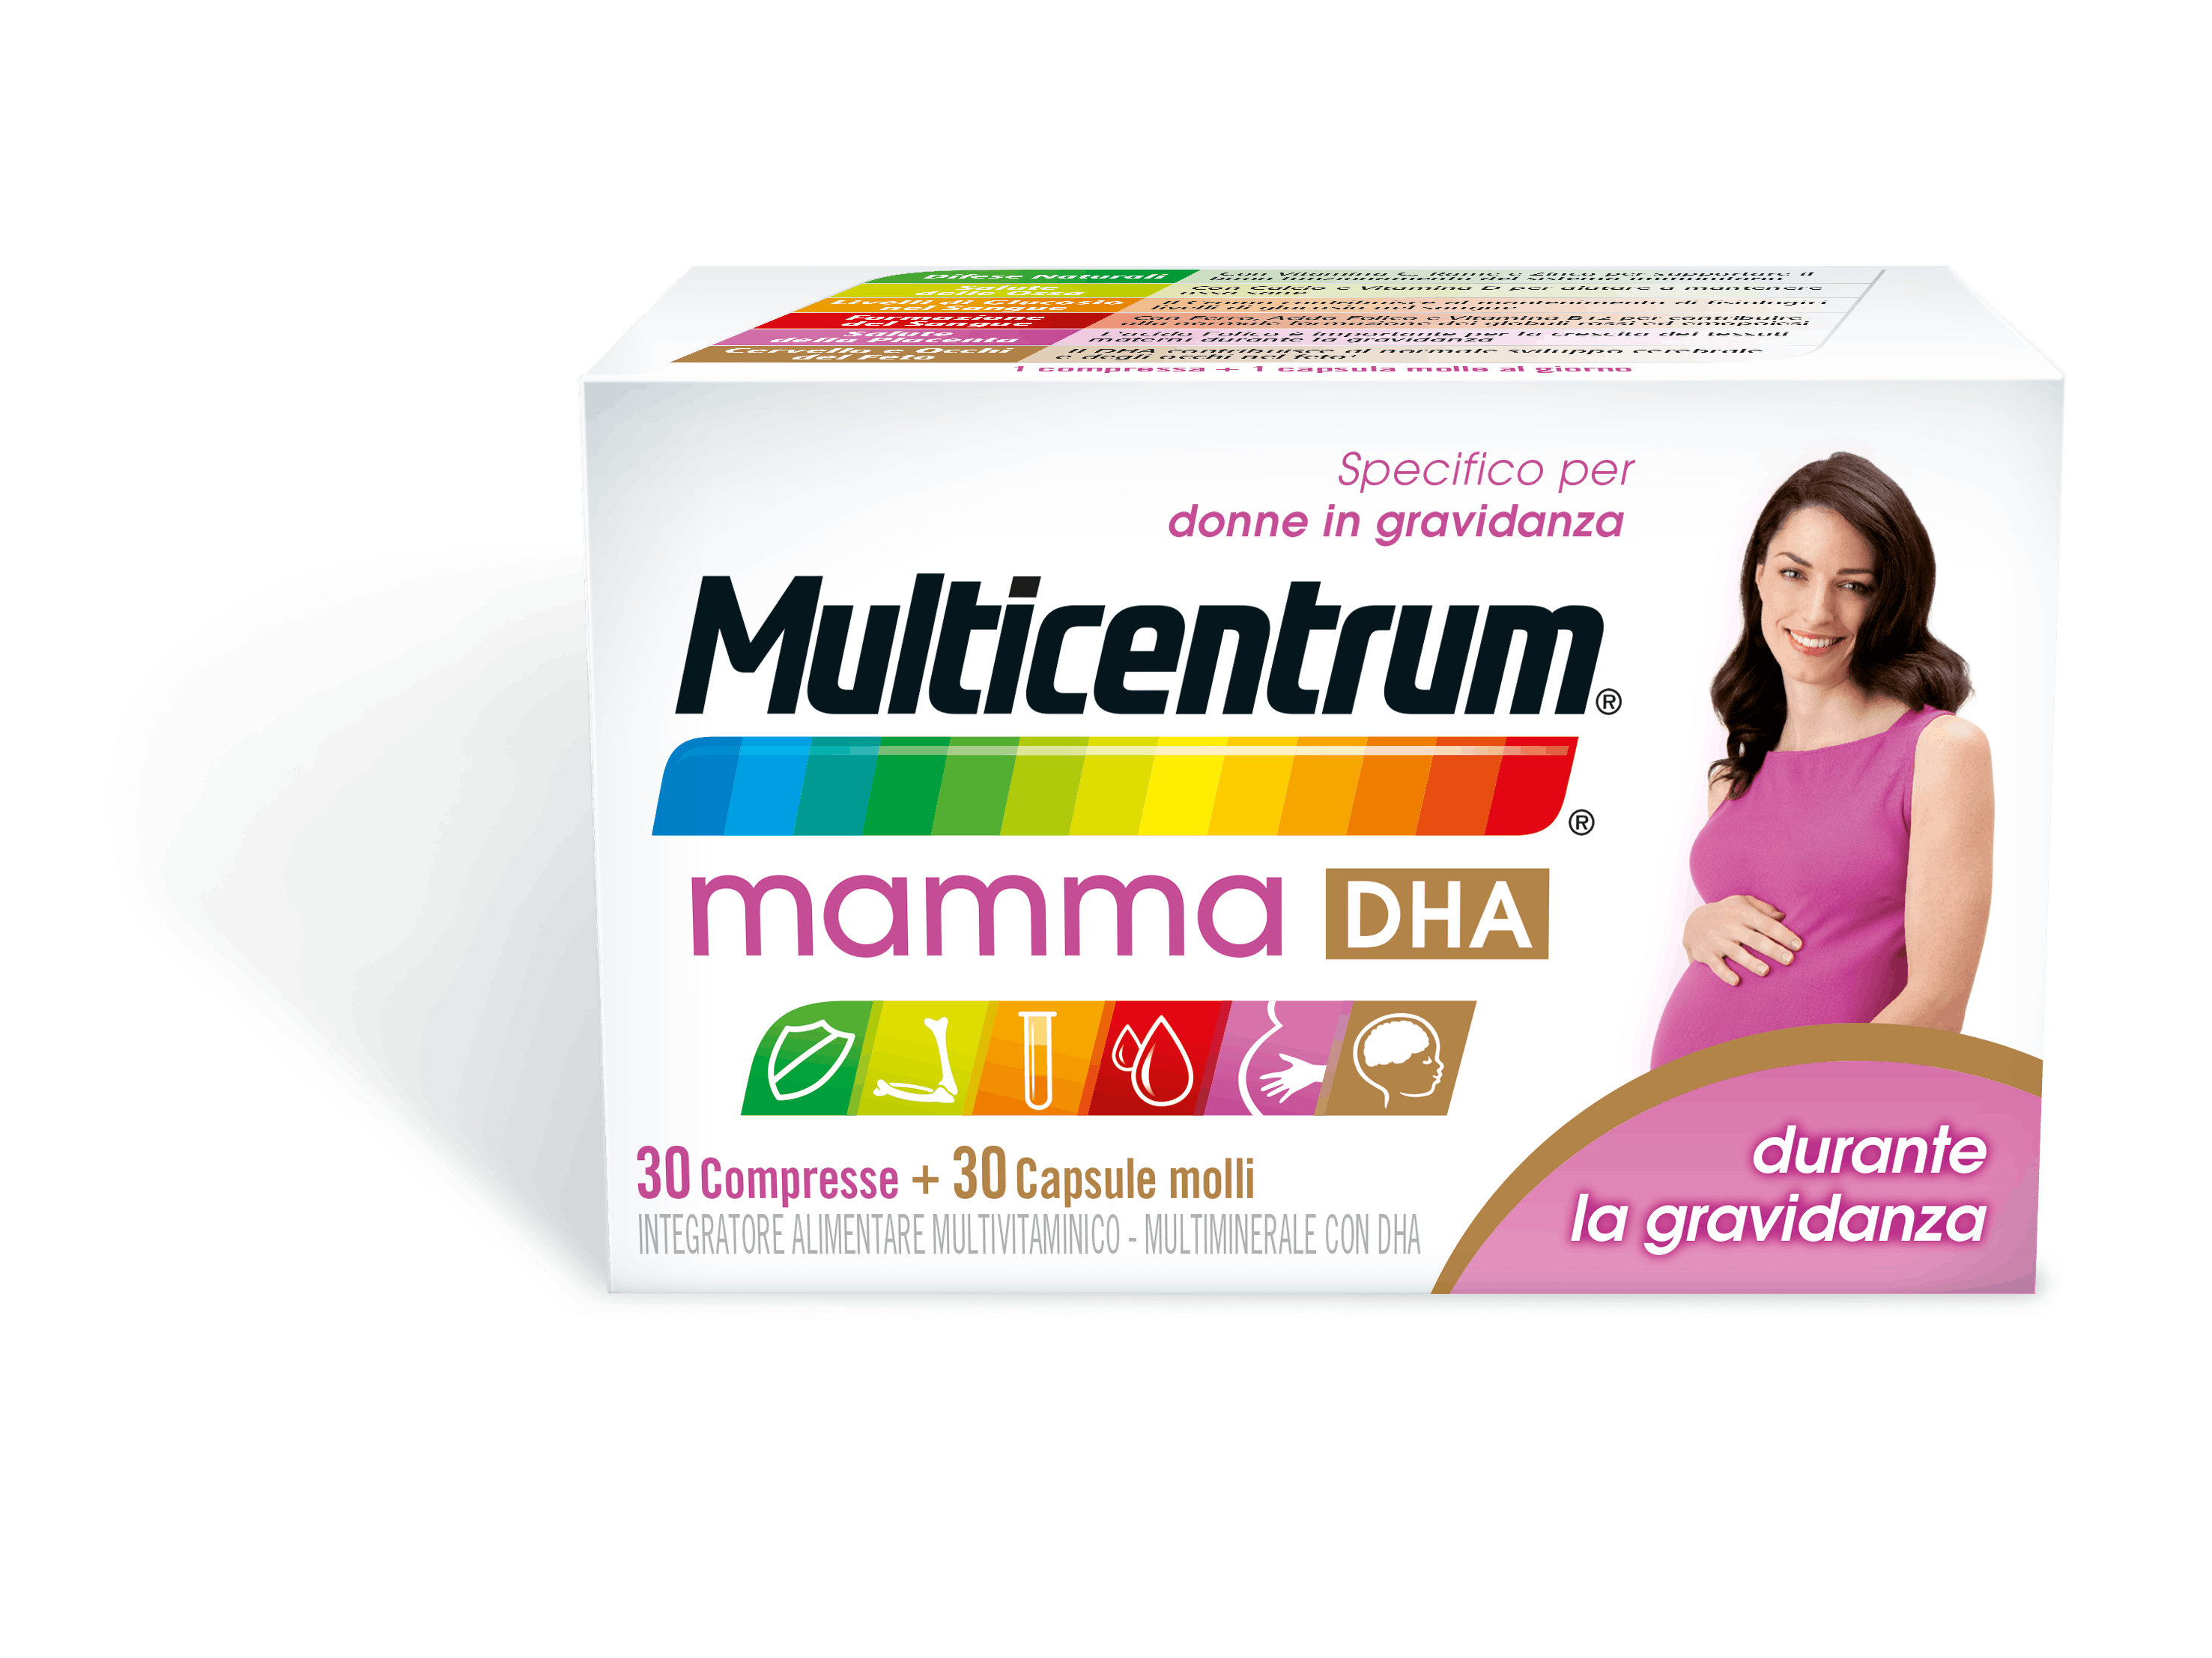 Multicentrum Mamma DHA